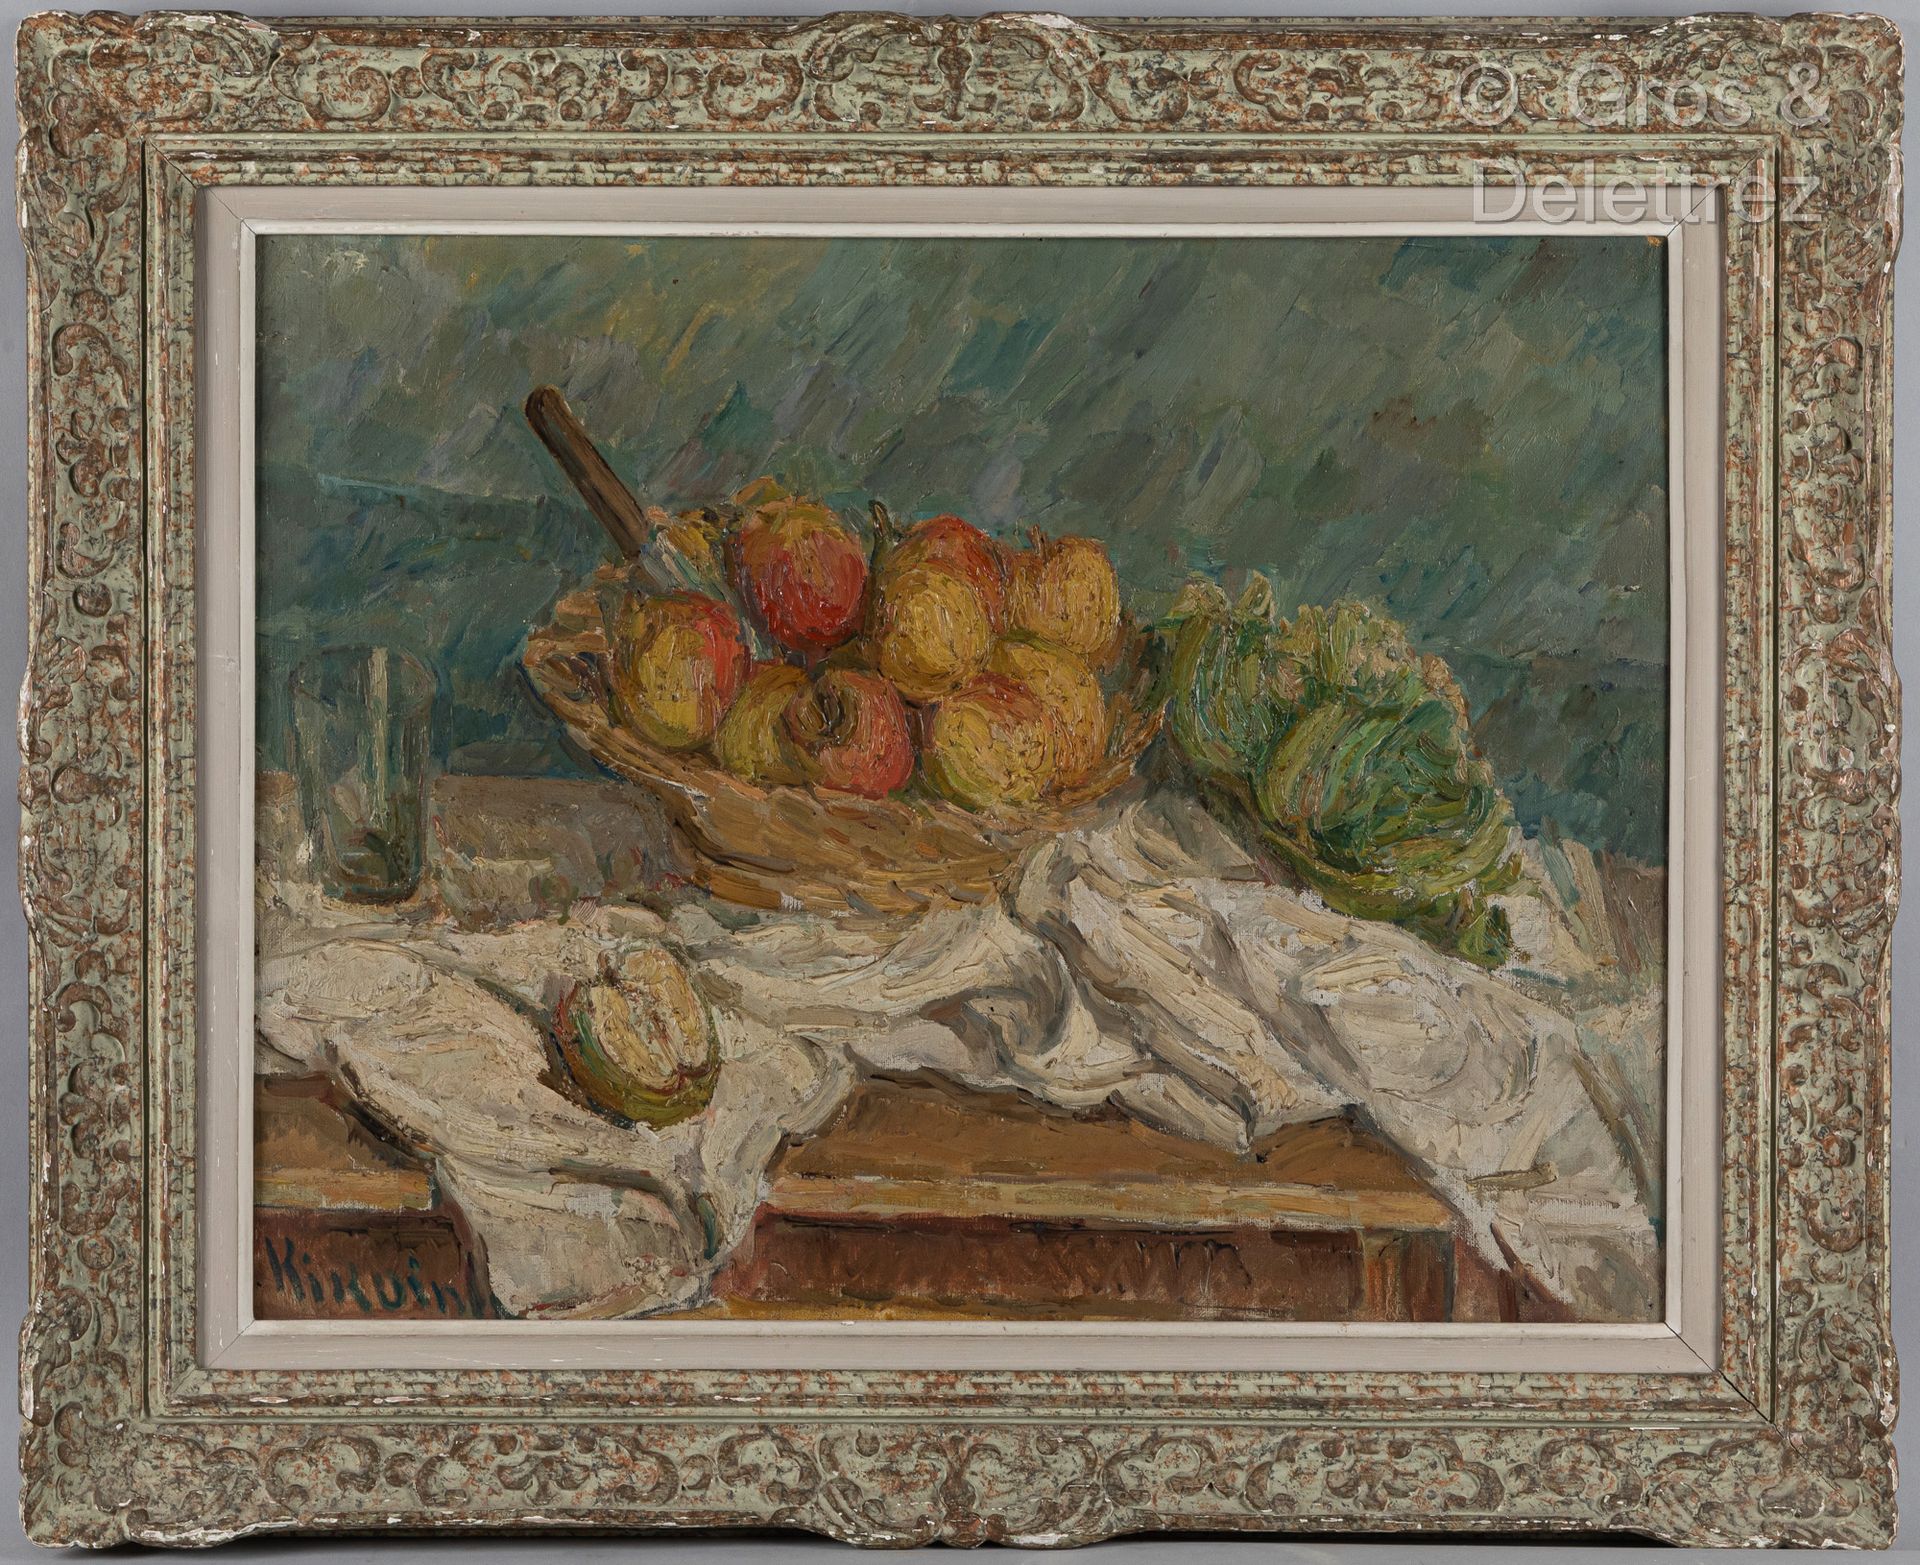 Michel KIKOINE (1892-1968) 苹果静物画，约1930-1935年

布面油画。

左下方有签名。

50 x 65厘米